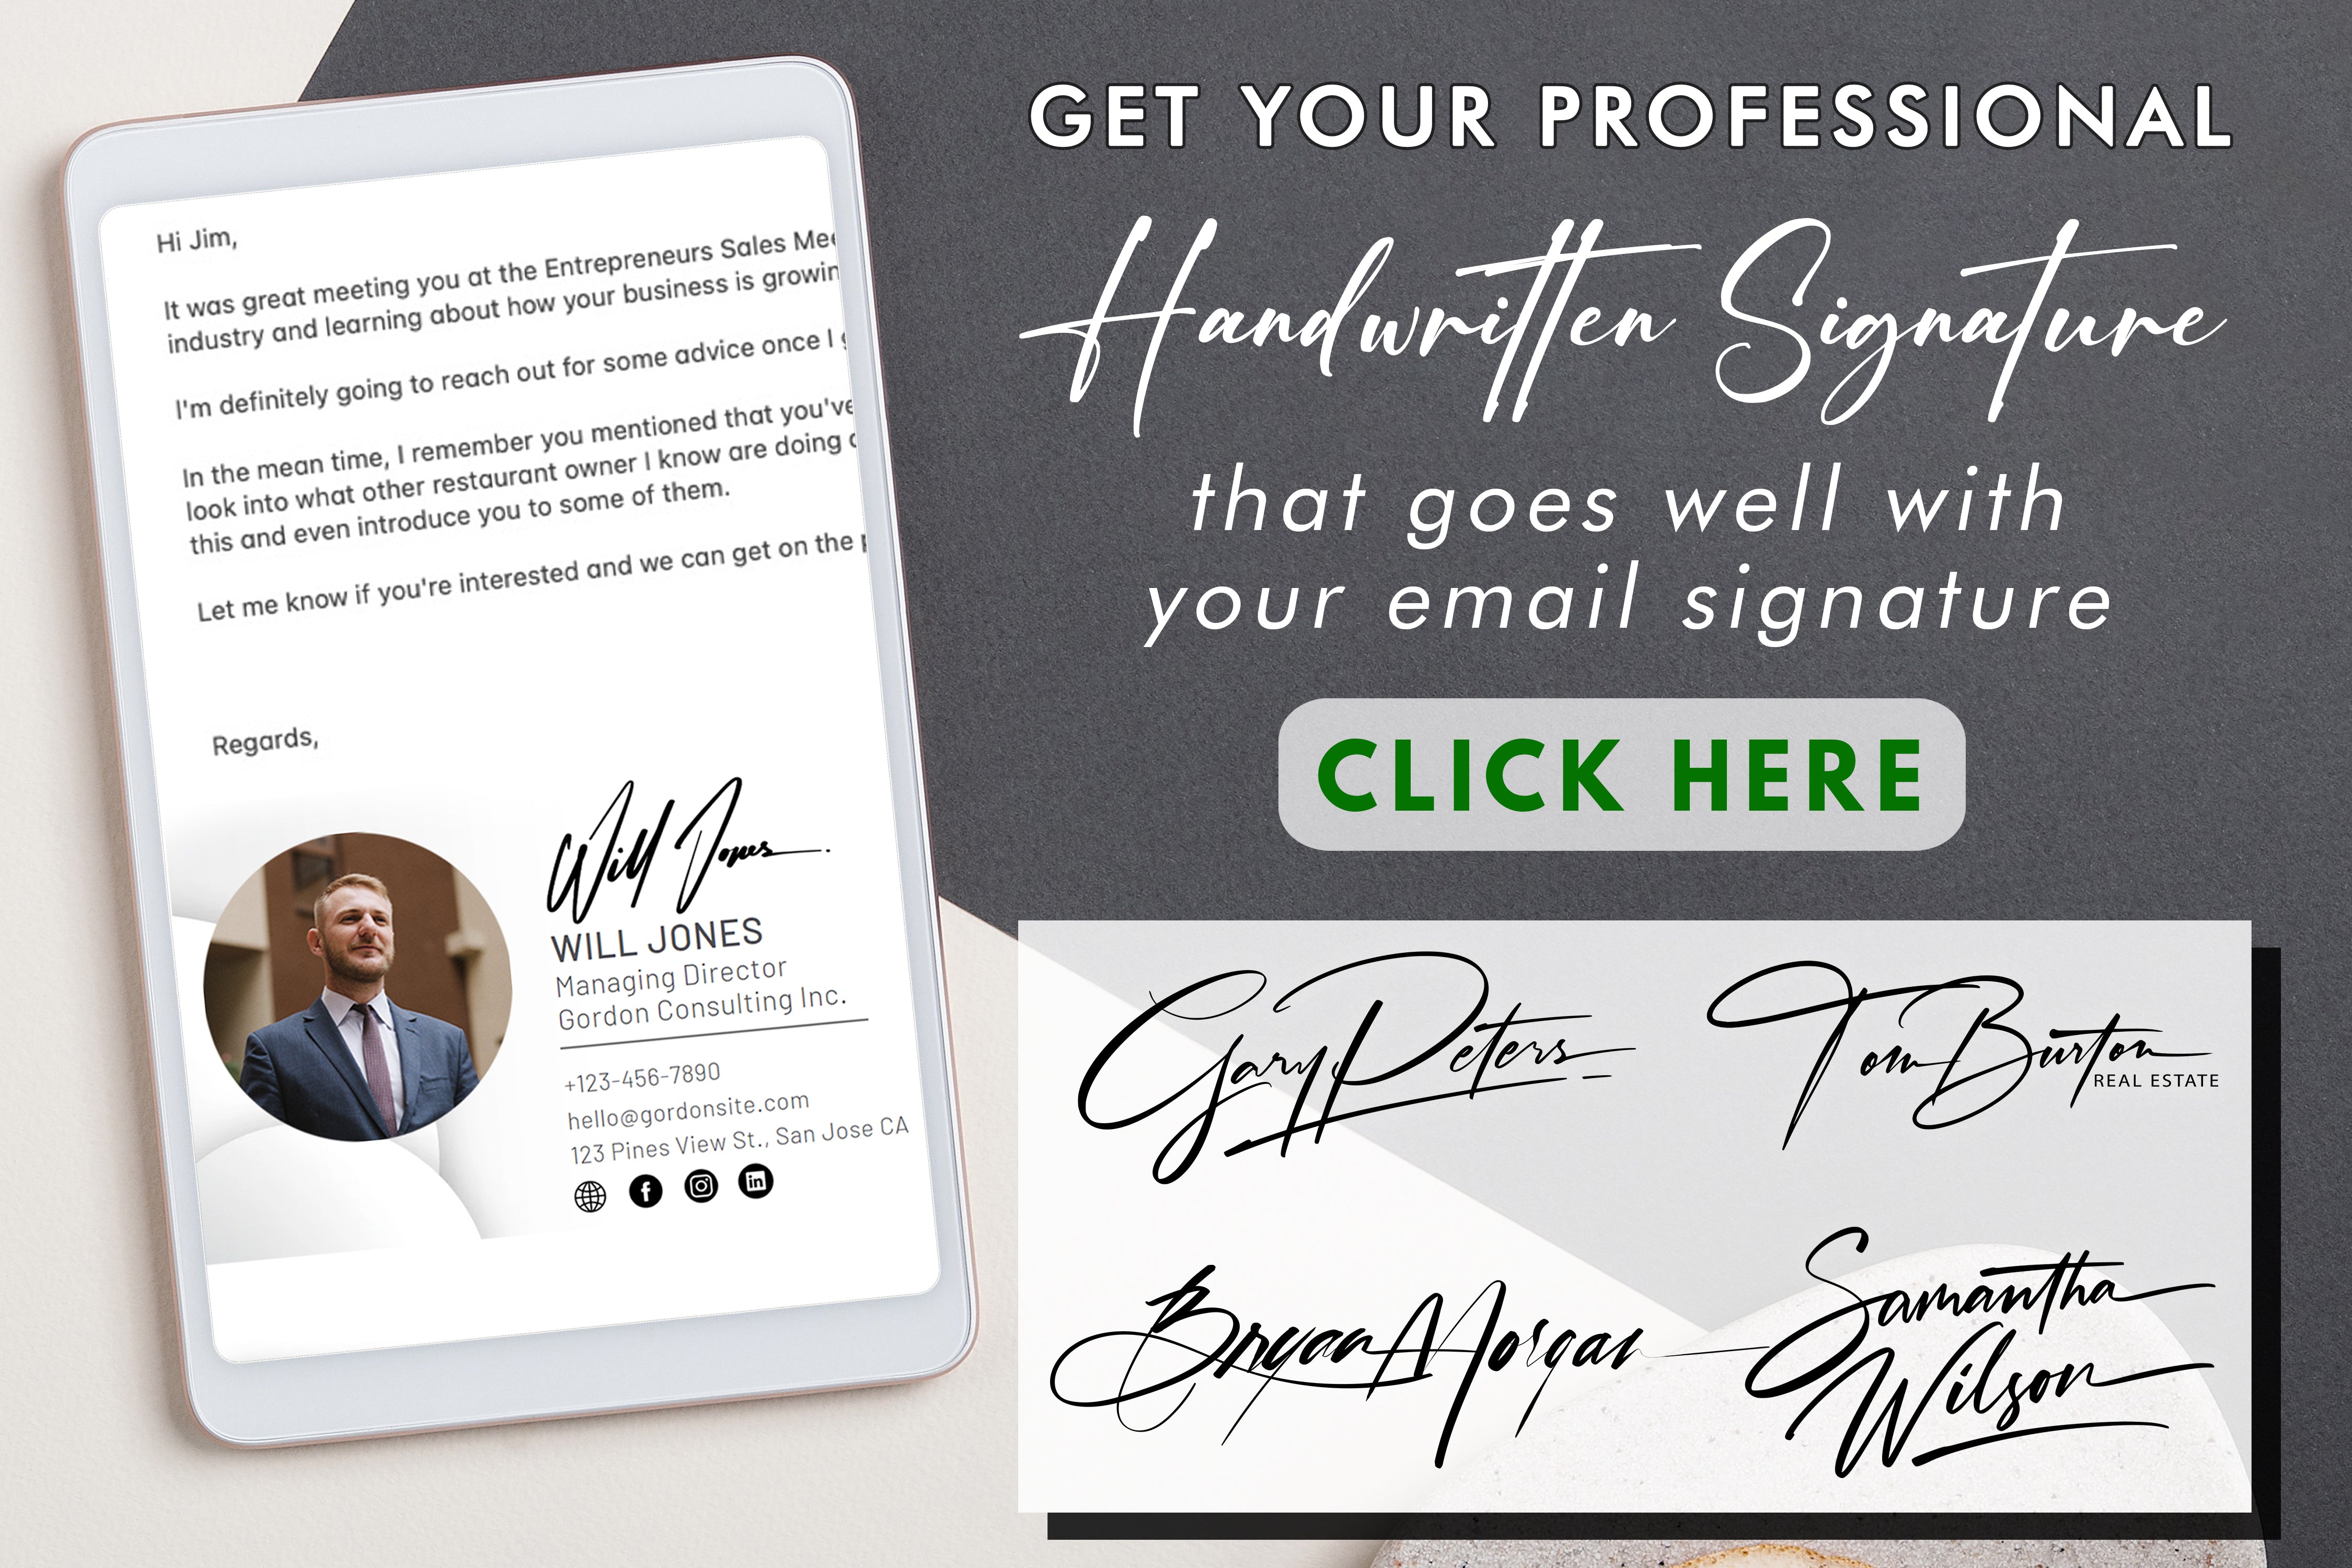 Imparate a sfruttare al meglio il vostro blocco firma e a migliorare la vostra esperienza di firma dei documenti con efficienza e un tocco personale.